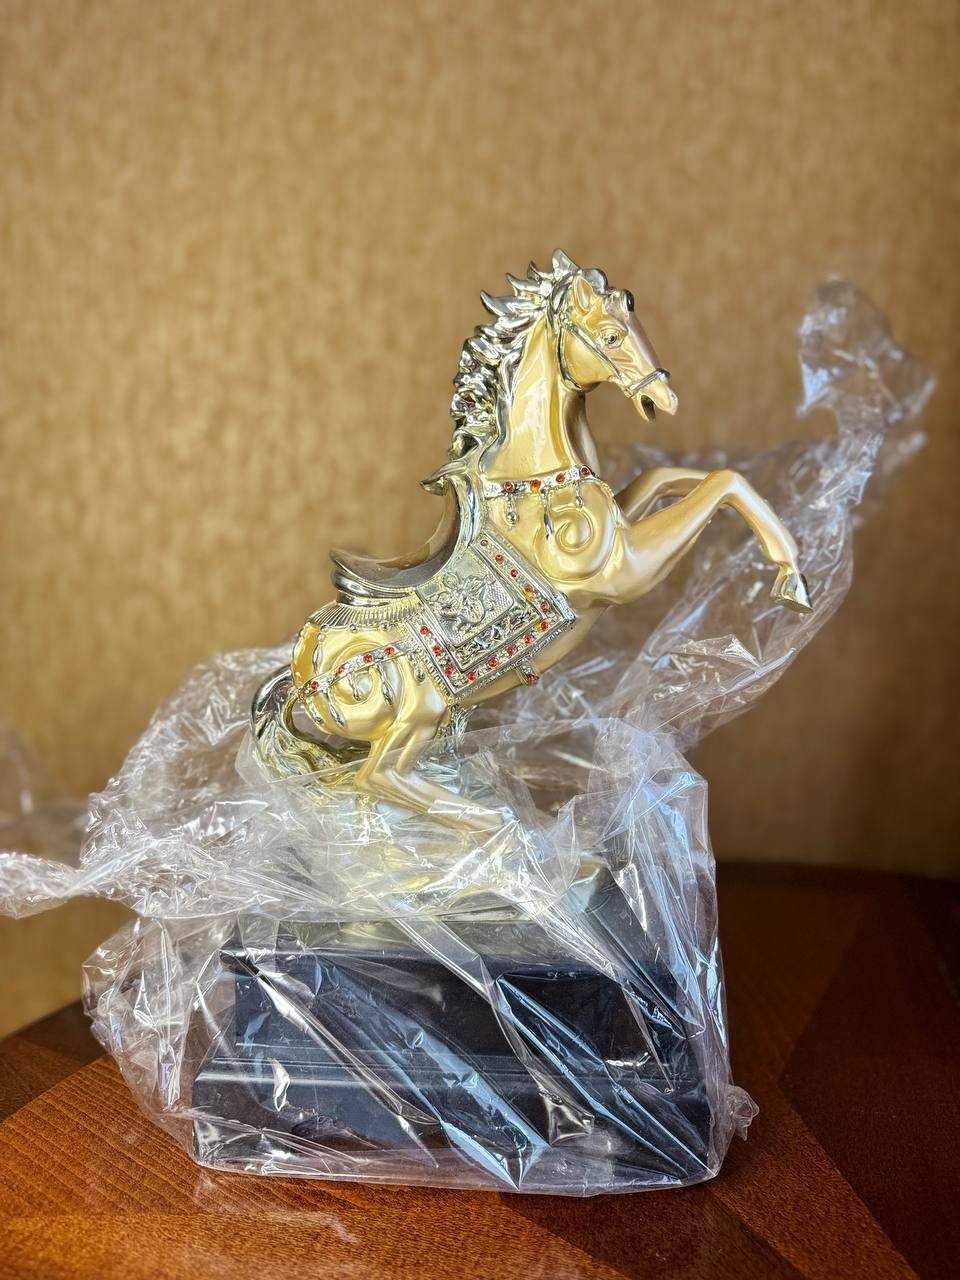 Подарочный Конь на Пьедестале, новый, не доставали из упаковки